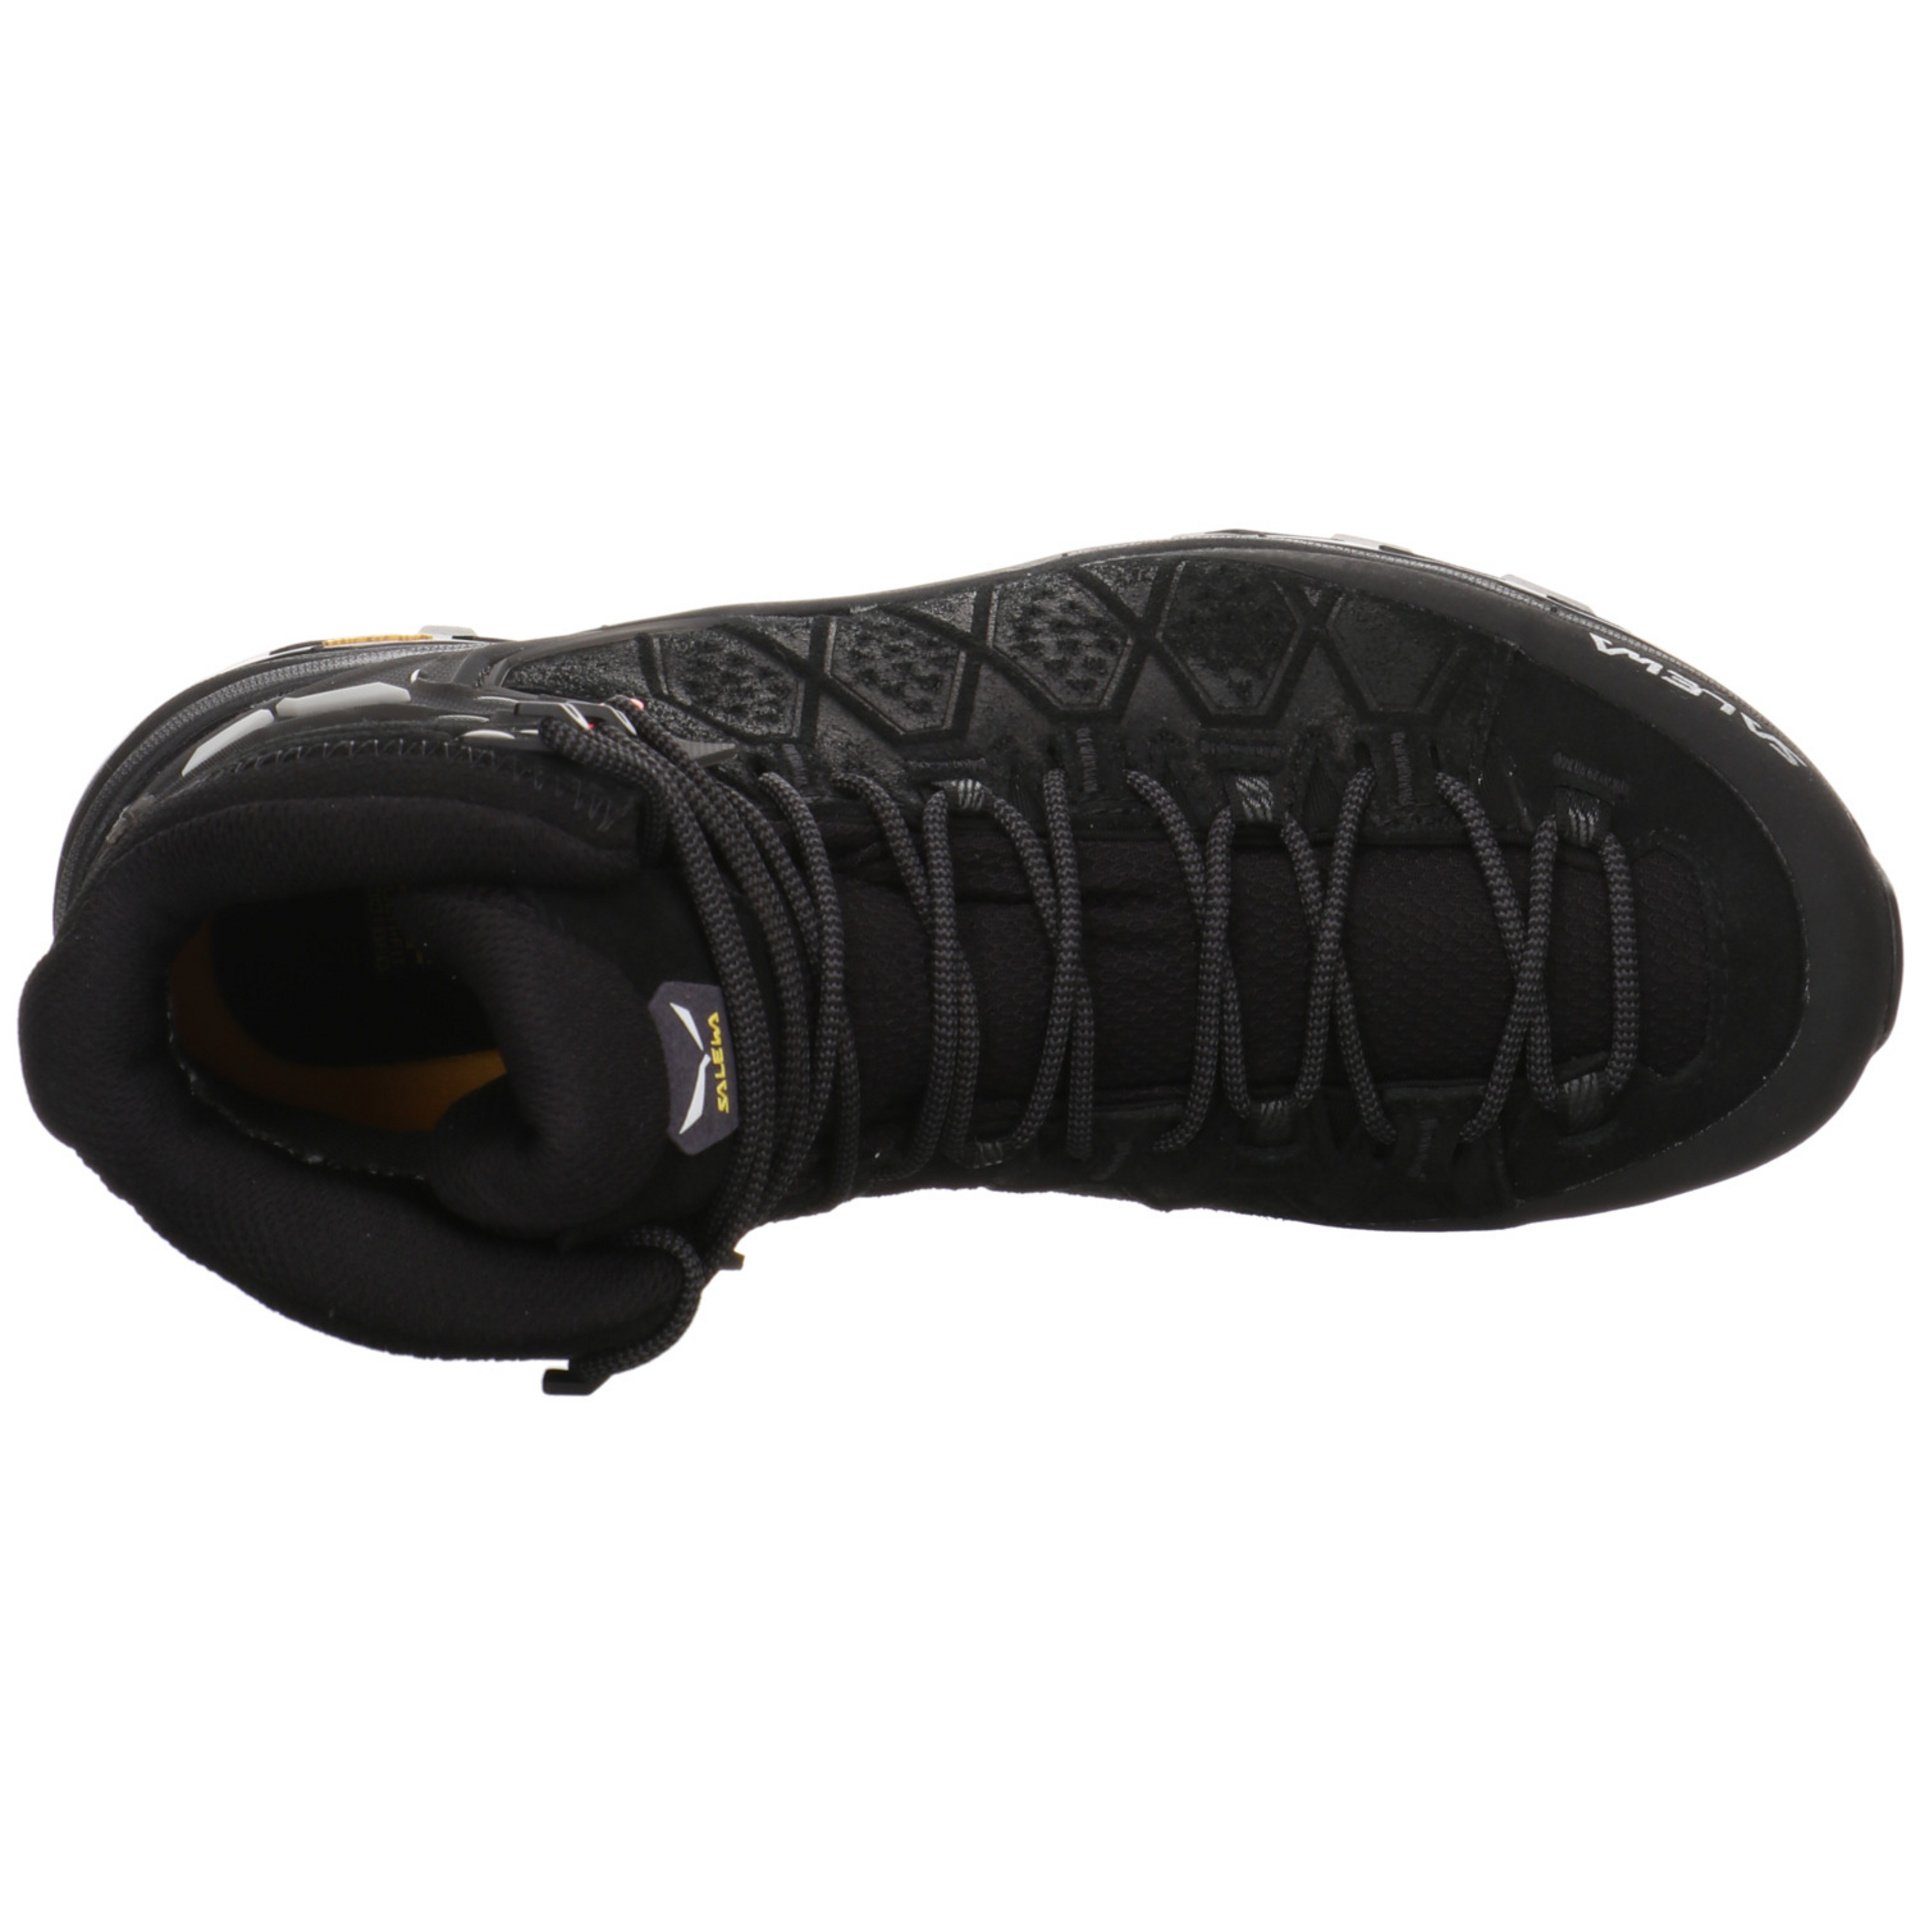 Outdoor Leder-/Textilkombination Salewa 0971 Outdoorschuh Black/Black Schuhe Damen